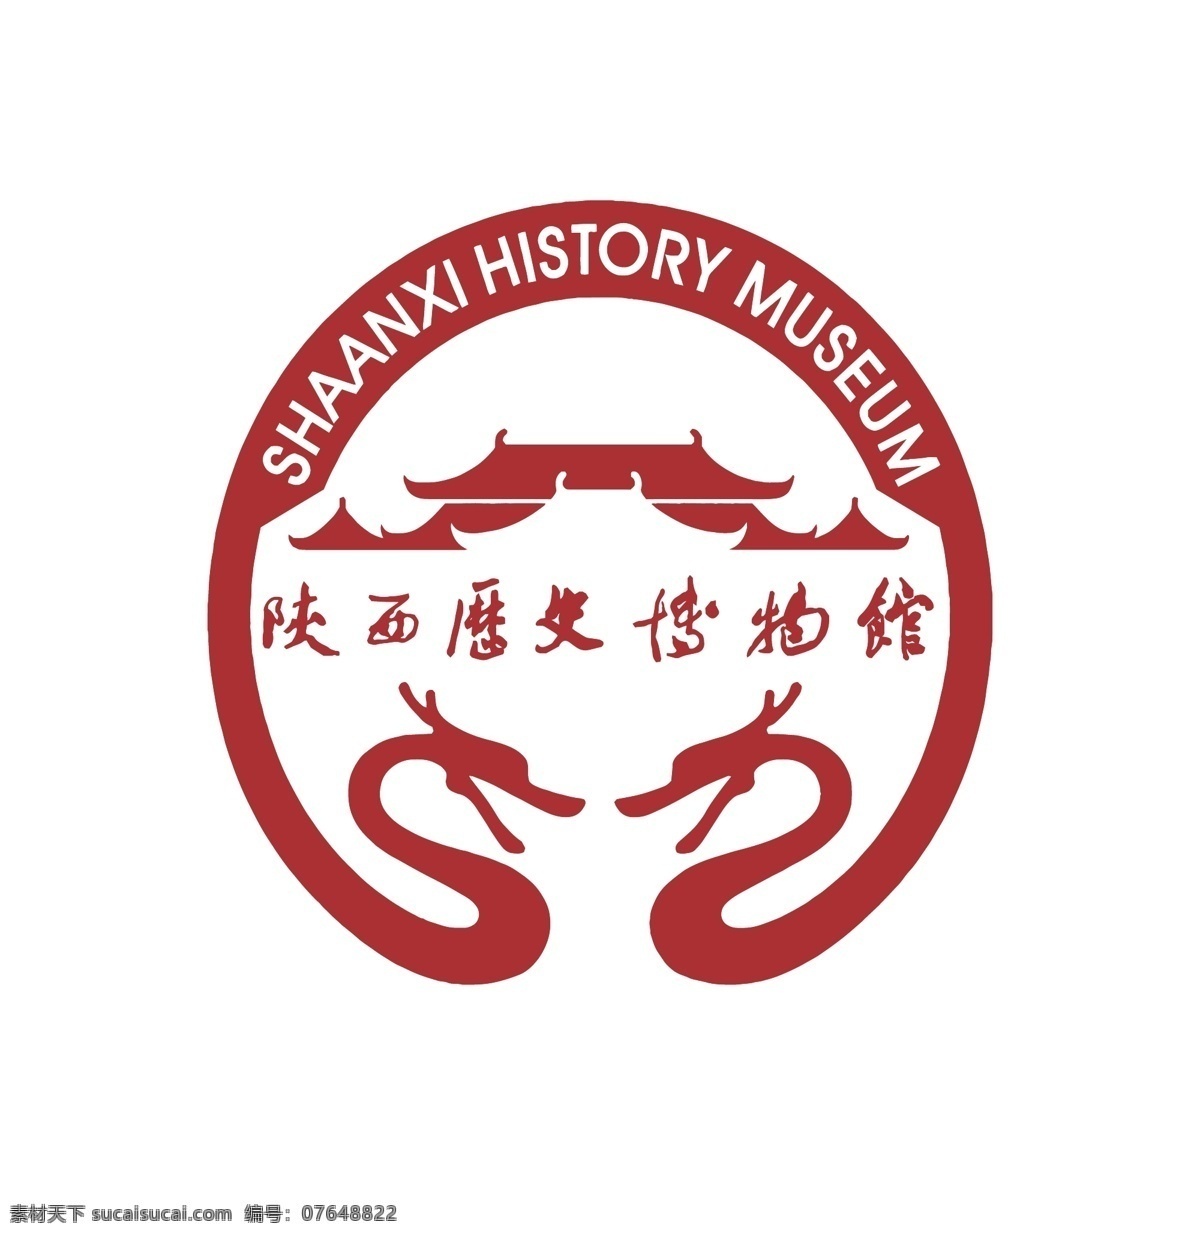 陕西历史博物馆 logo 陕西 历史 博物馆 文化 标志图标 公共标识标志